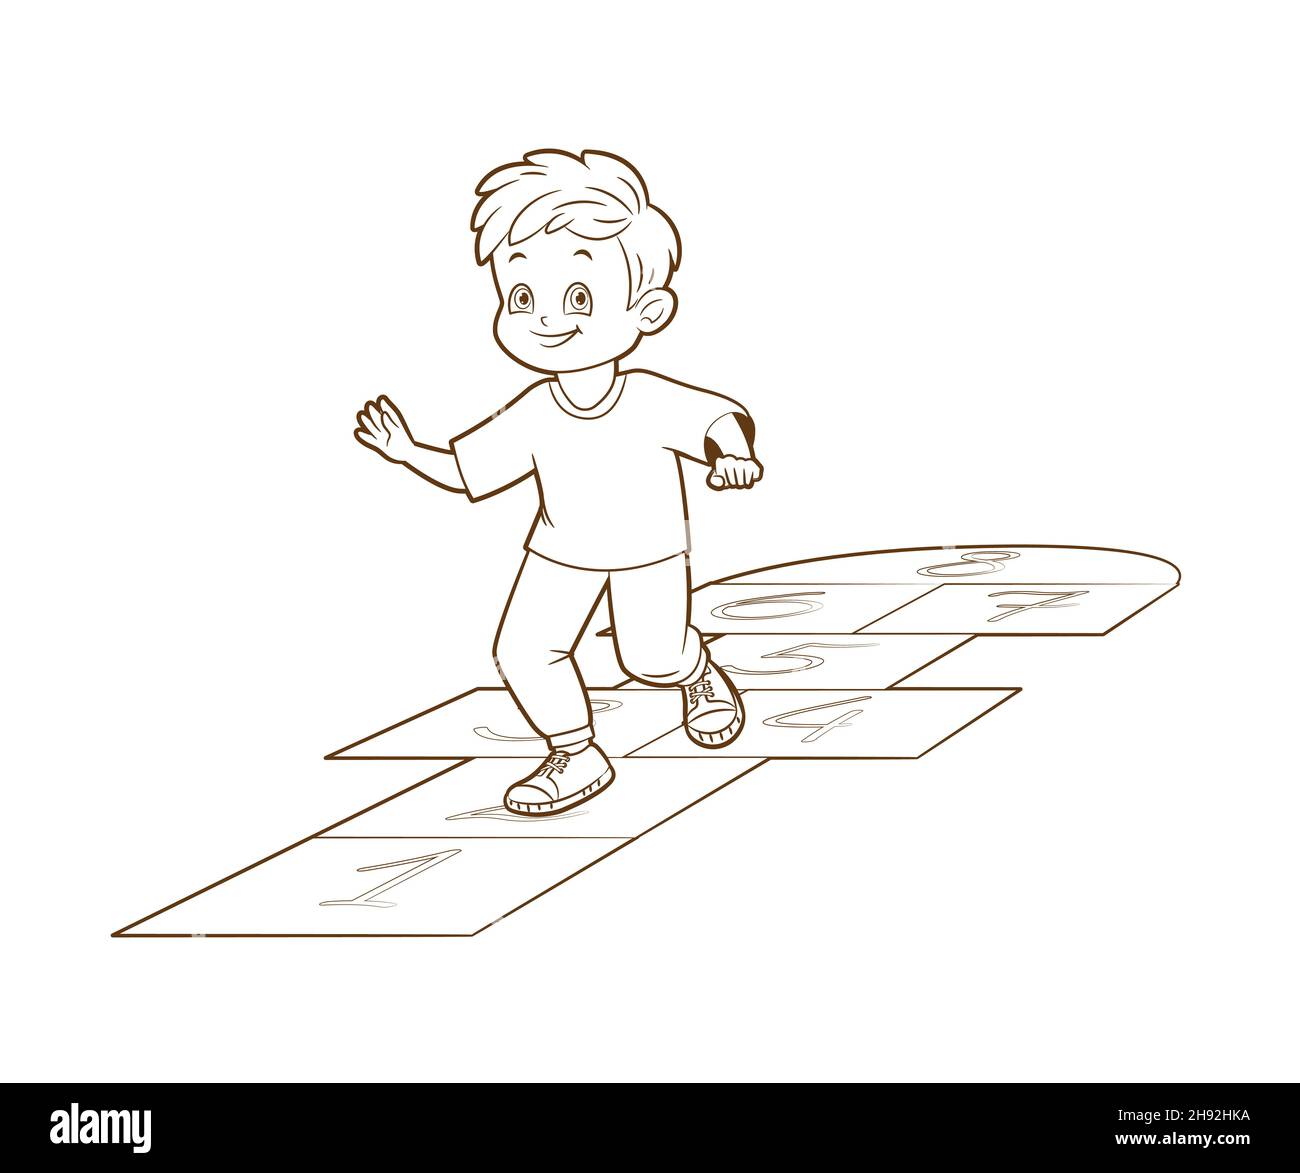 Le garçon jouant Hopskotch, saute sur une jambe tandis que .Livre de coloriage.Illustration vectorielle , style de dessin animé, dessin au trait noir et blanc Illustration de Vecteur